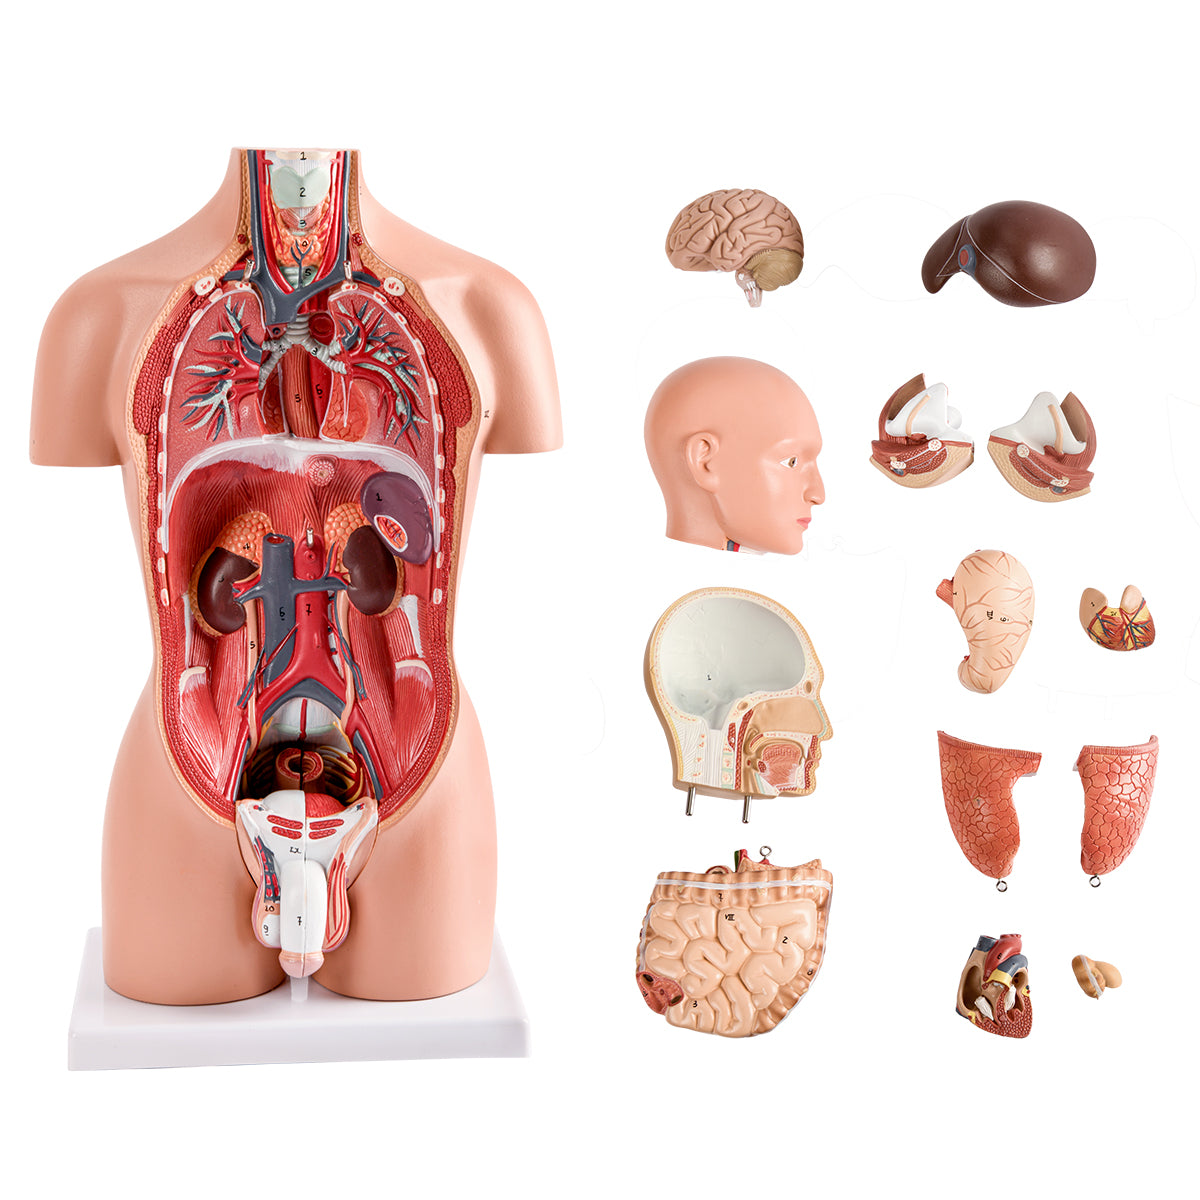 Evotech Scientific Half Size Human Torso Model Dual-Sex W/ Removable Organs, 50 cm, 16 Parts